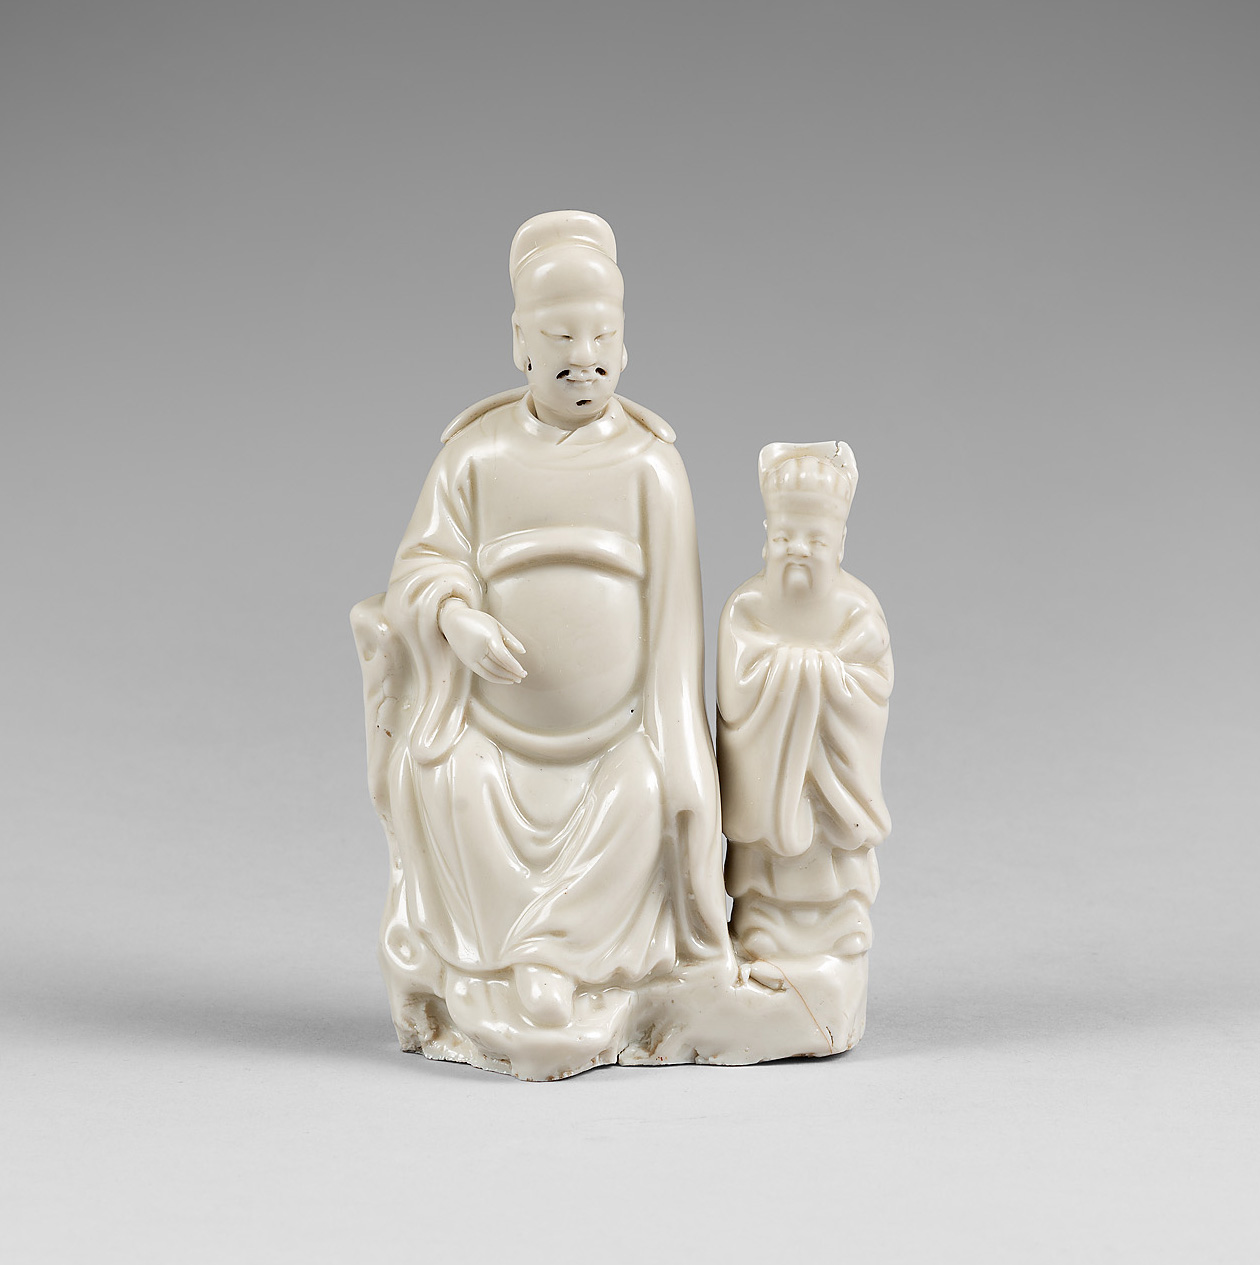 Porcelaine Fin de la dynastie Ming, vers 1640, Chine